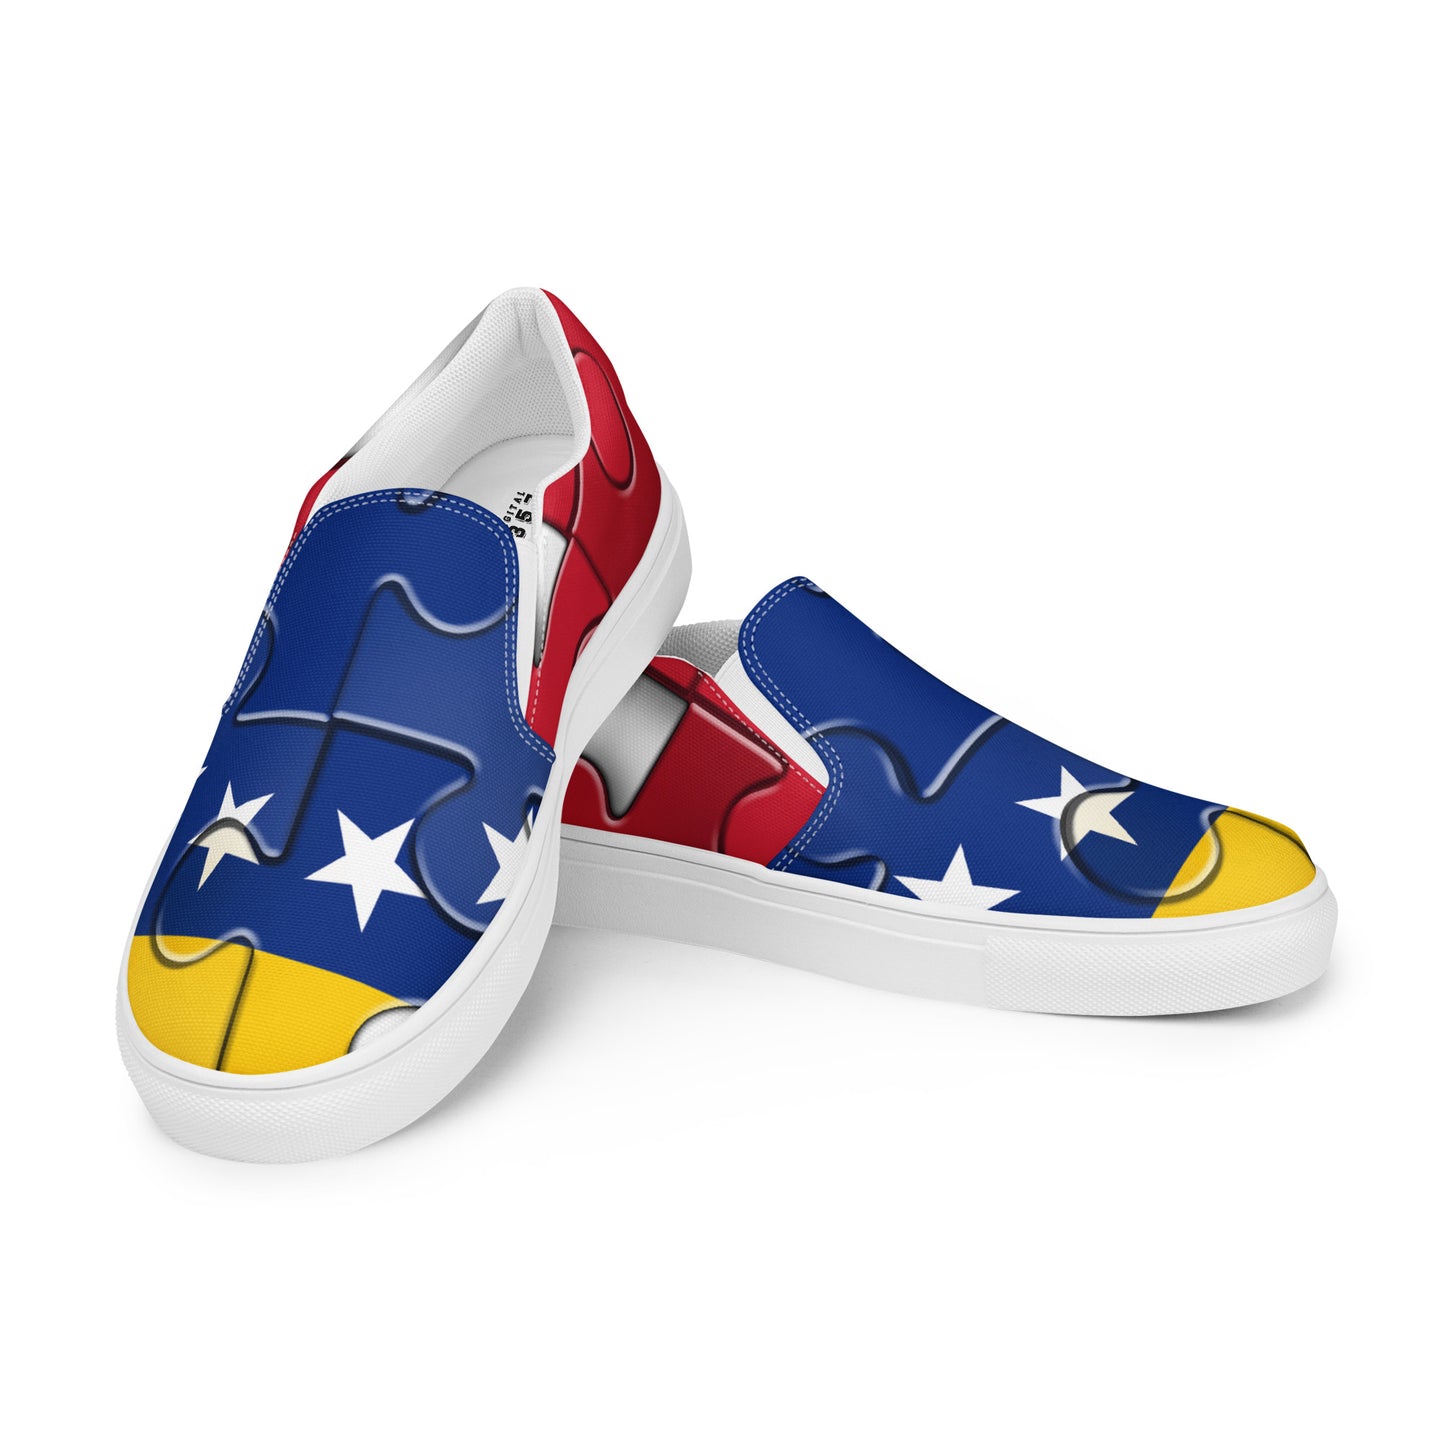 Women’s slip-on canvas shoes - Venezuela's flag